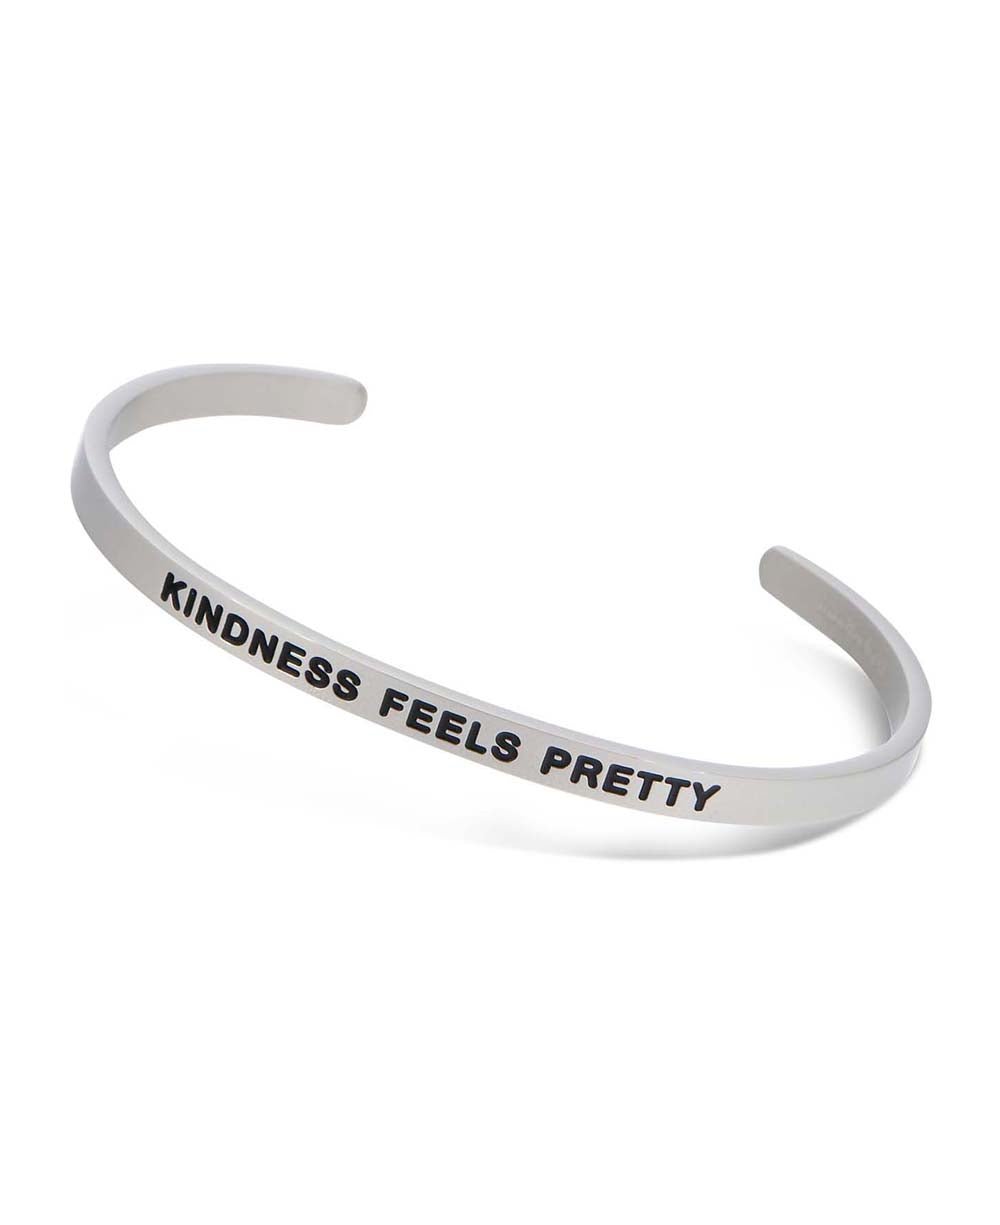 Kindness Feels Pretty, Engraved Cuff Bracelet - Bracelets